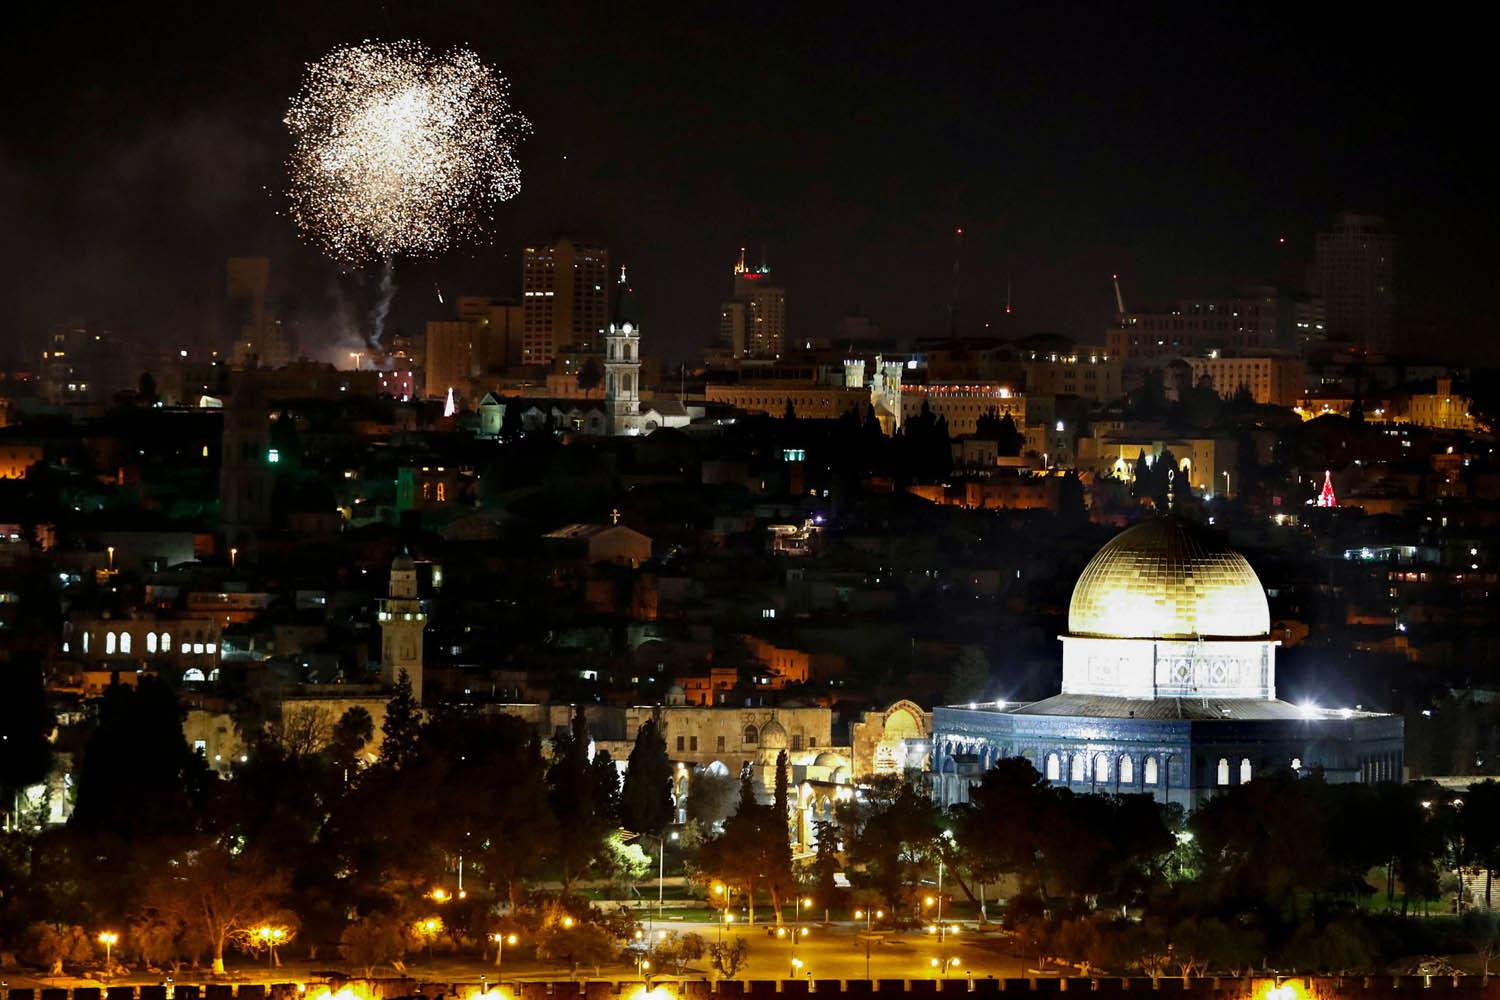 العاب نارية احتفالا بالعام الجديد في القدس